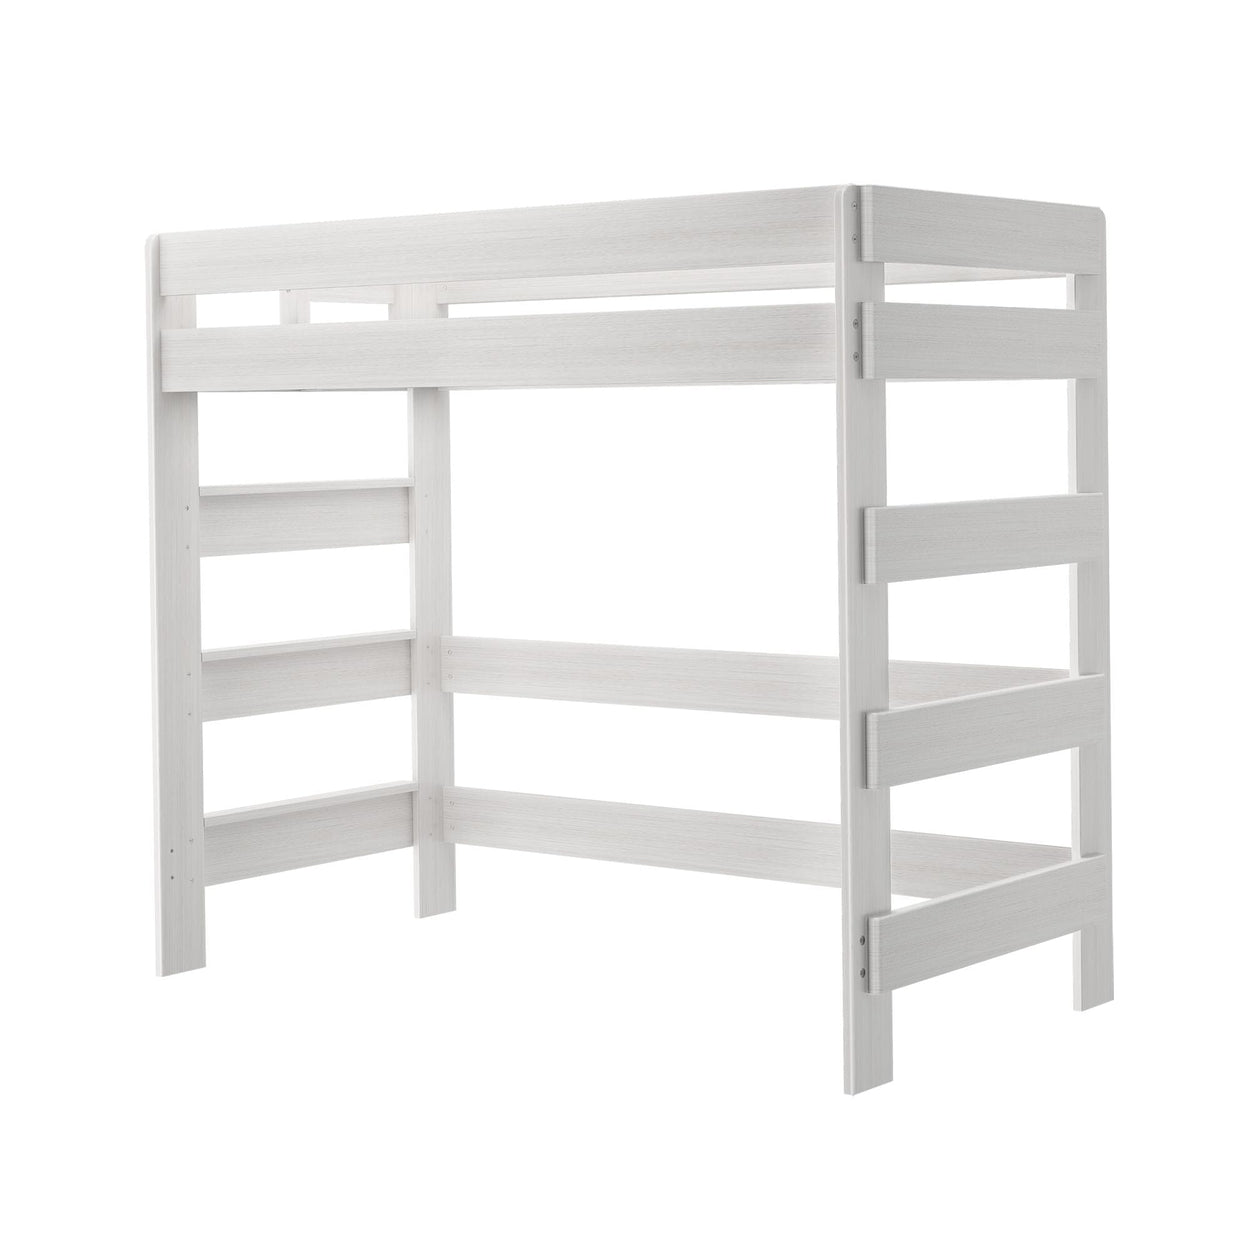 190227-182 : Loft Beds K/D High Loft Bed, 7 slats w/ metal support bar, White Wash